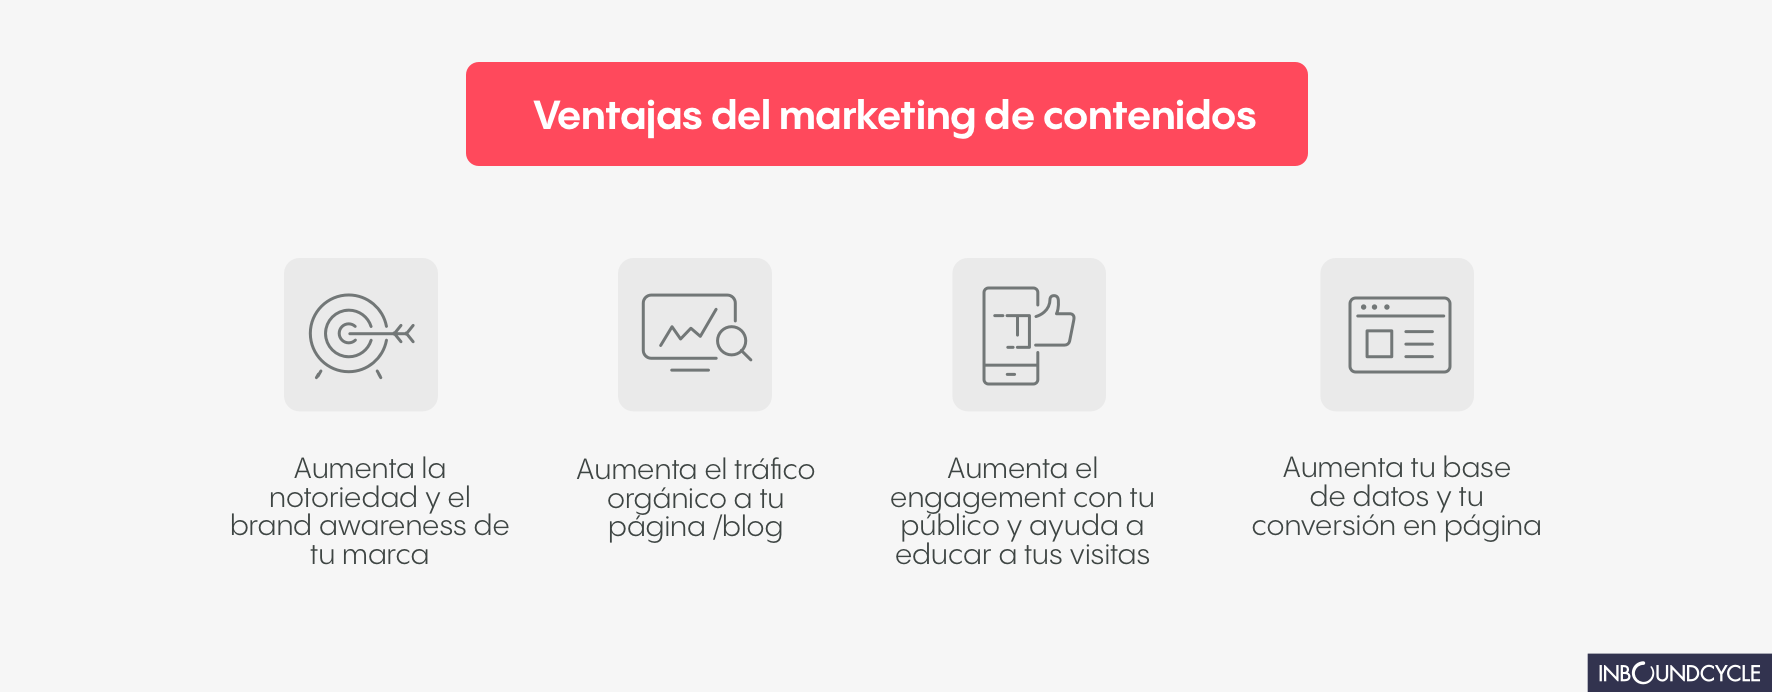 Ventajas_del_marketing_de_contenidos-1